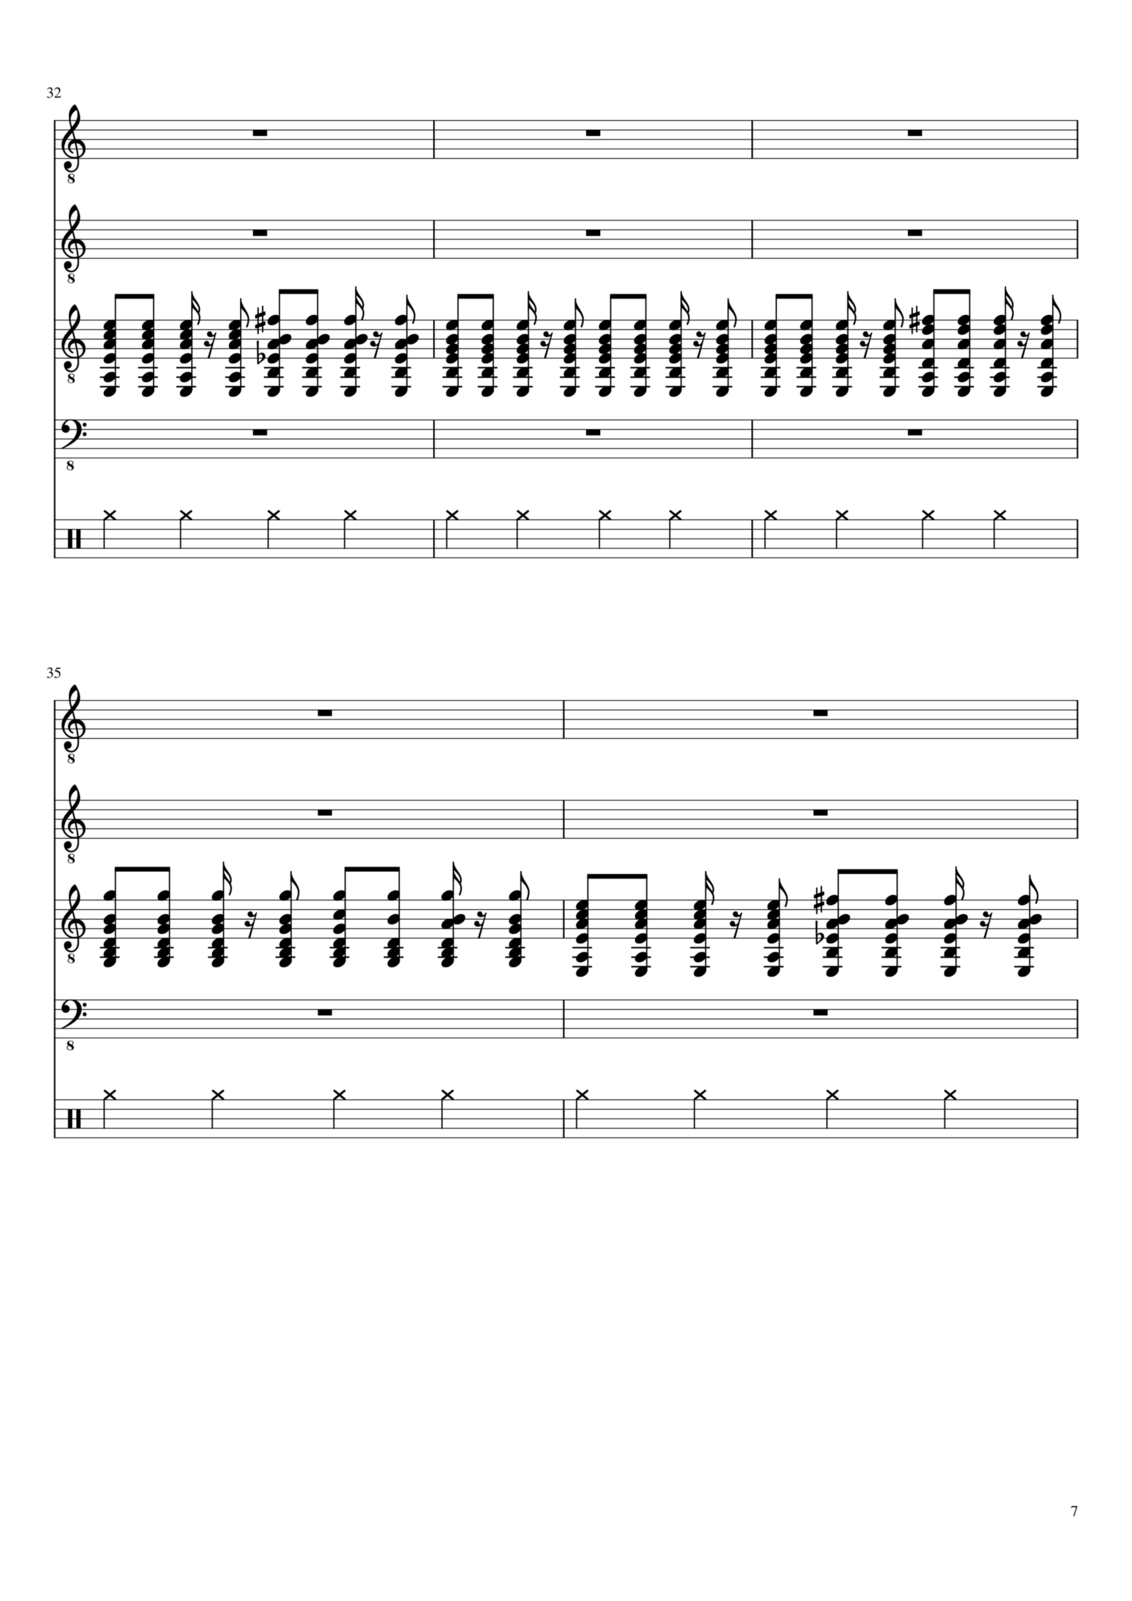 Vechnaya molodost slide, Image 7